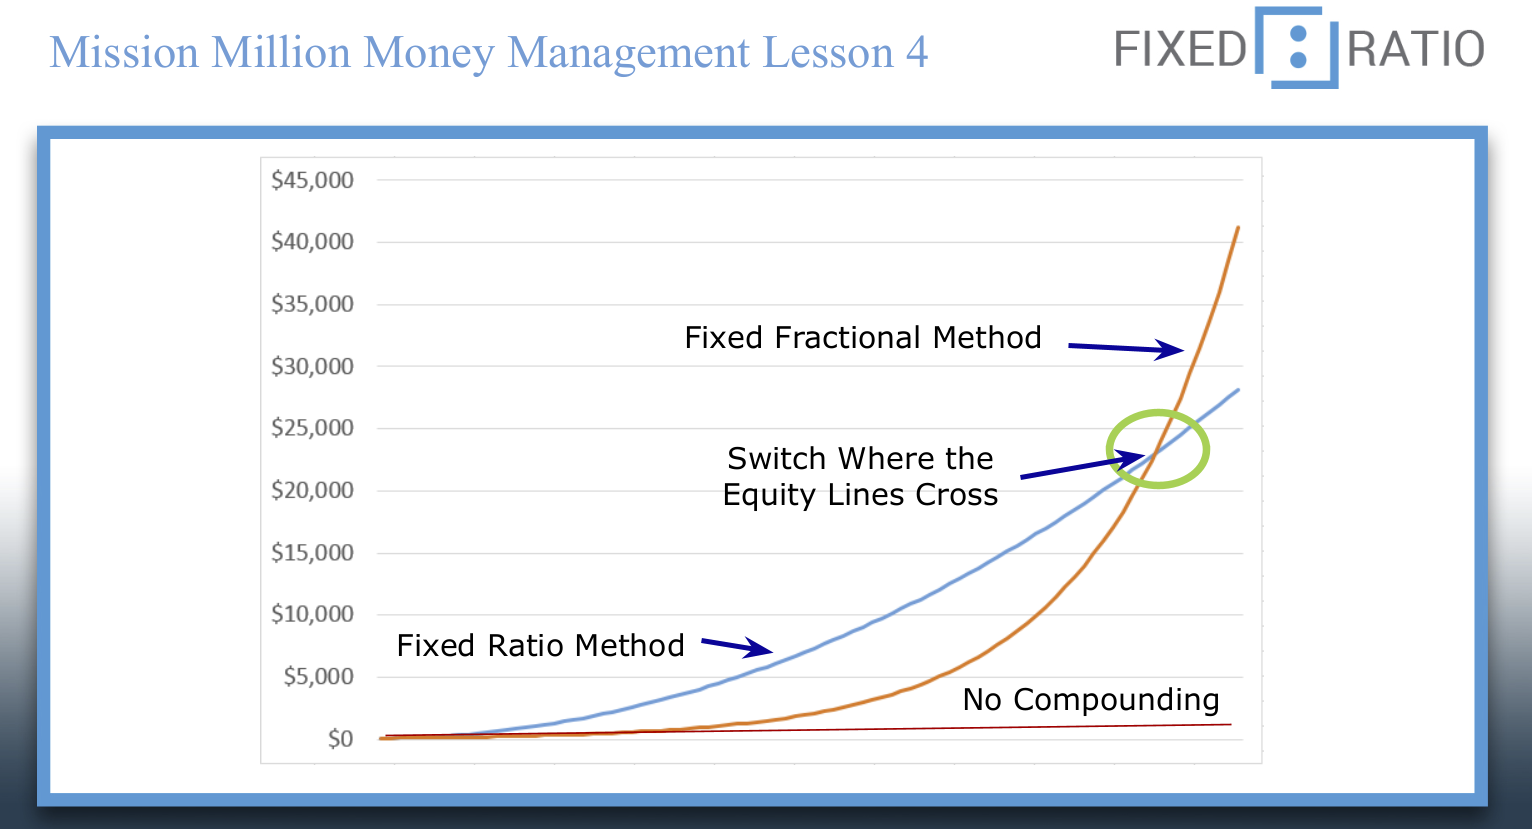 What Is Mission Million Money Management Course